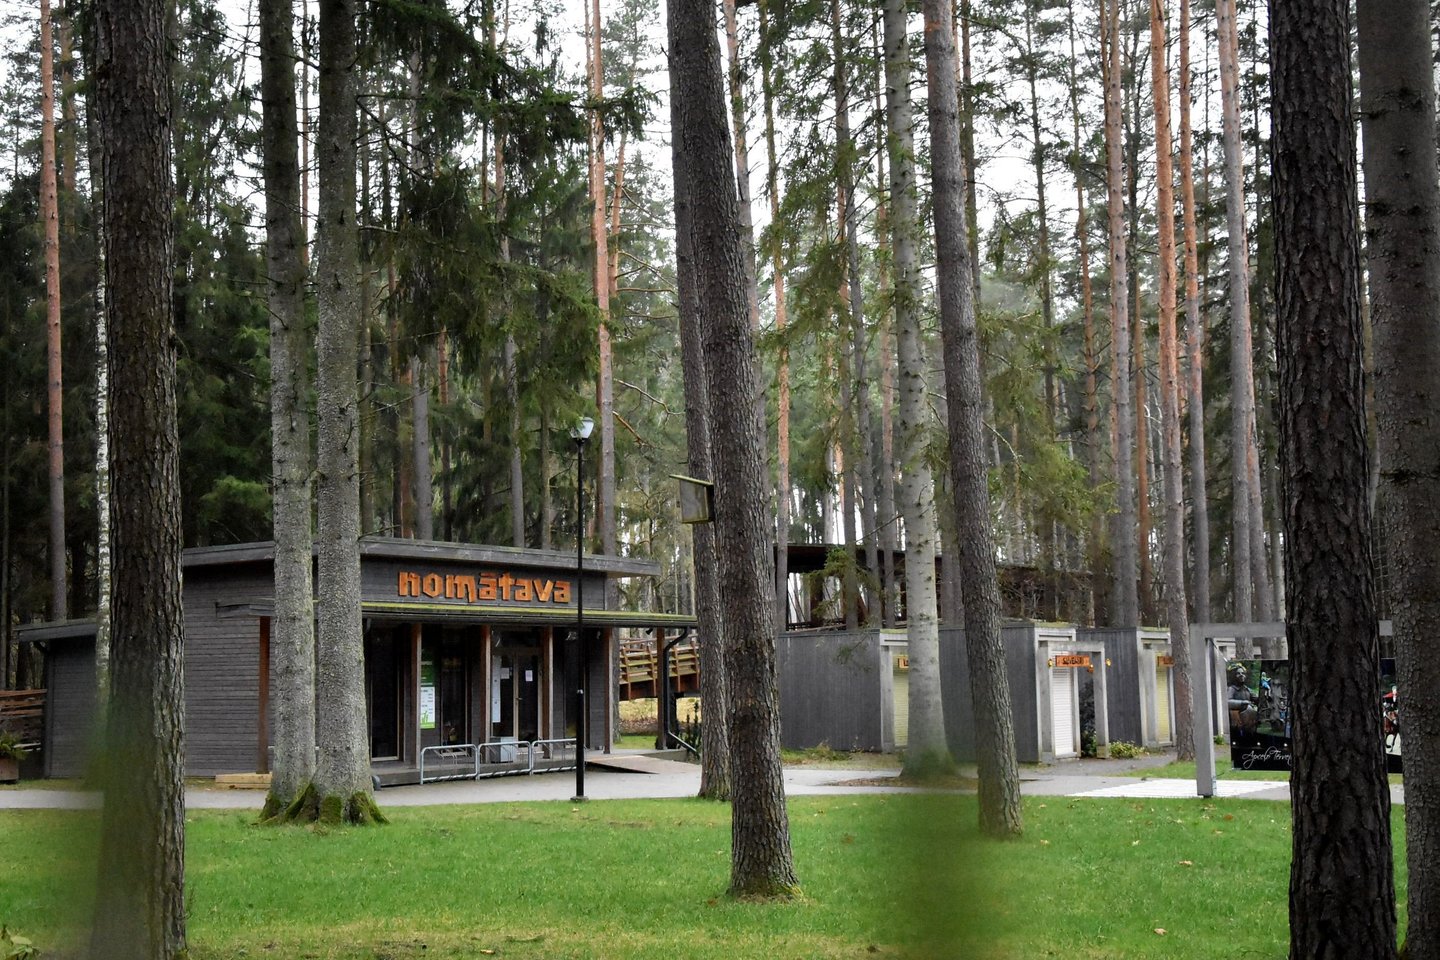  Tėrvetės gamtos parkas Latvijoje.<br> A.Srėbalienės nuotr.